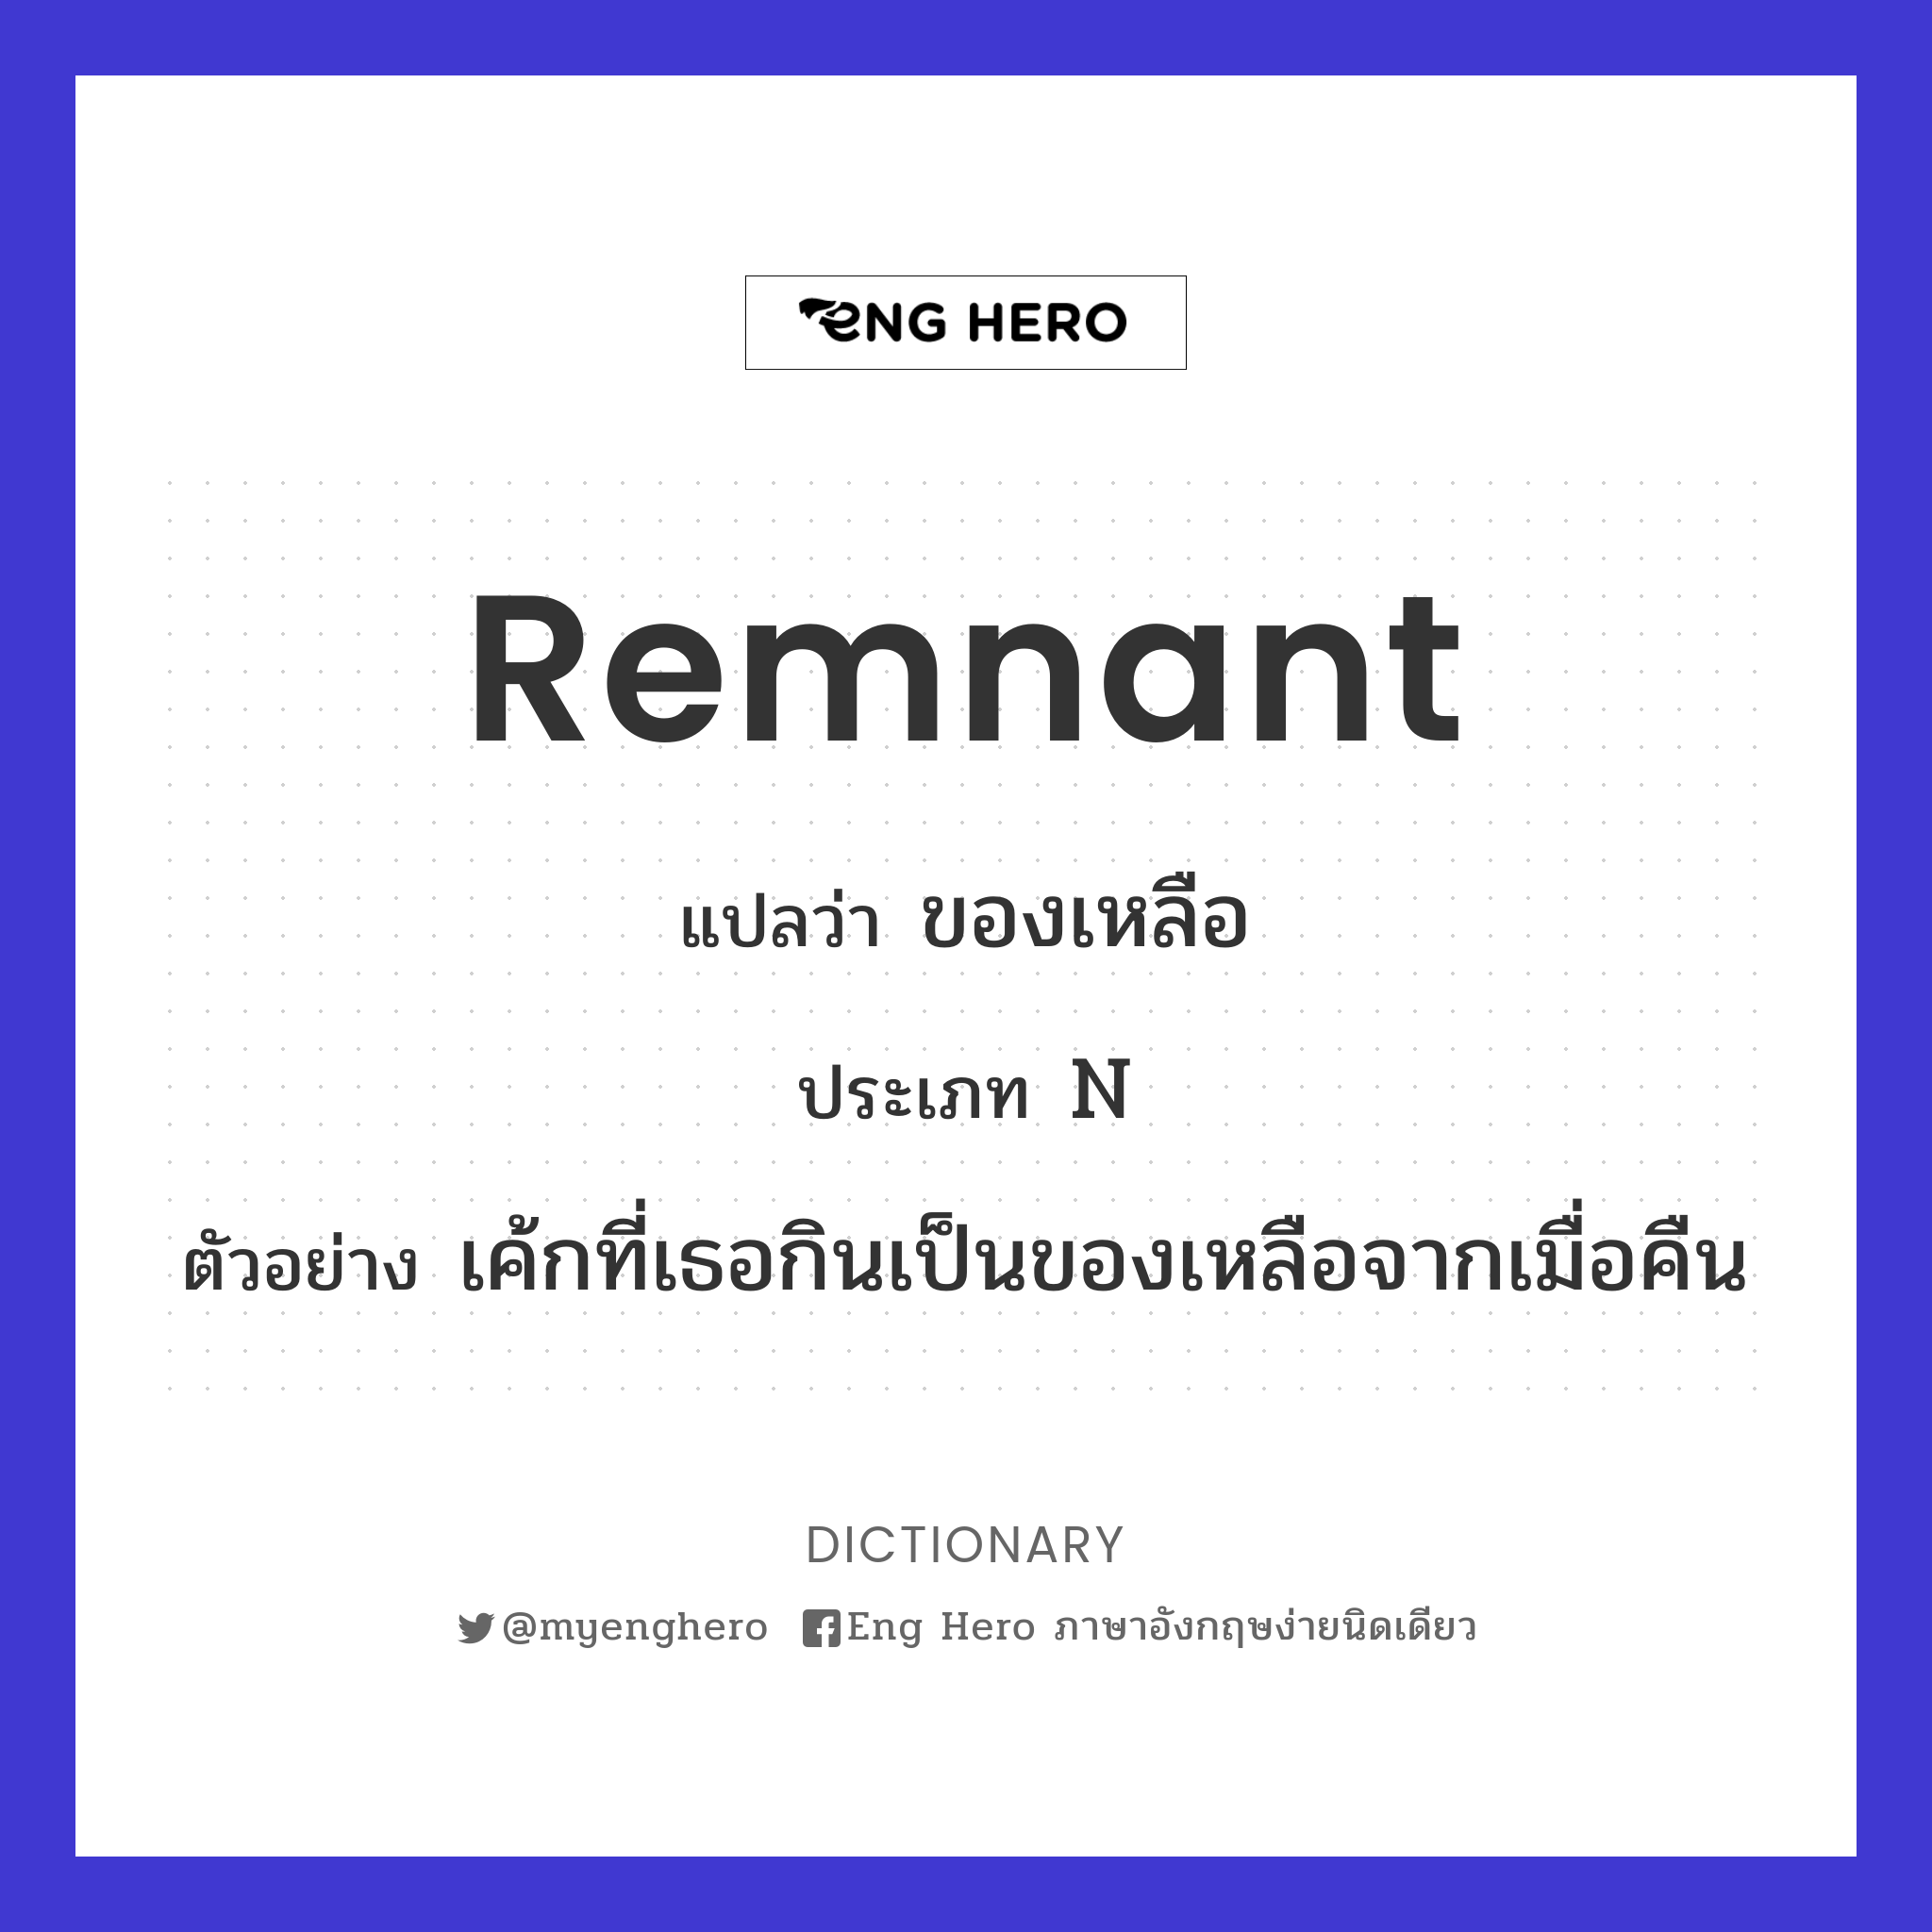 remnant